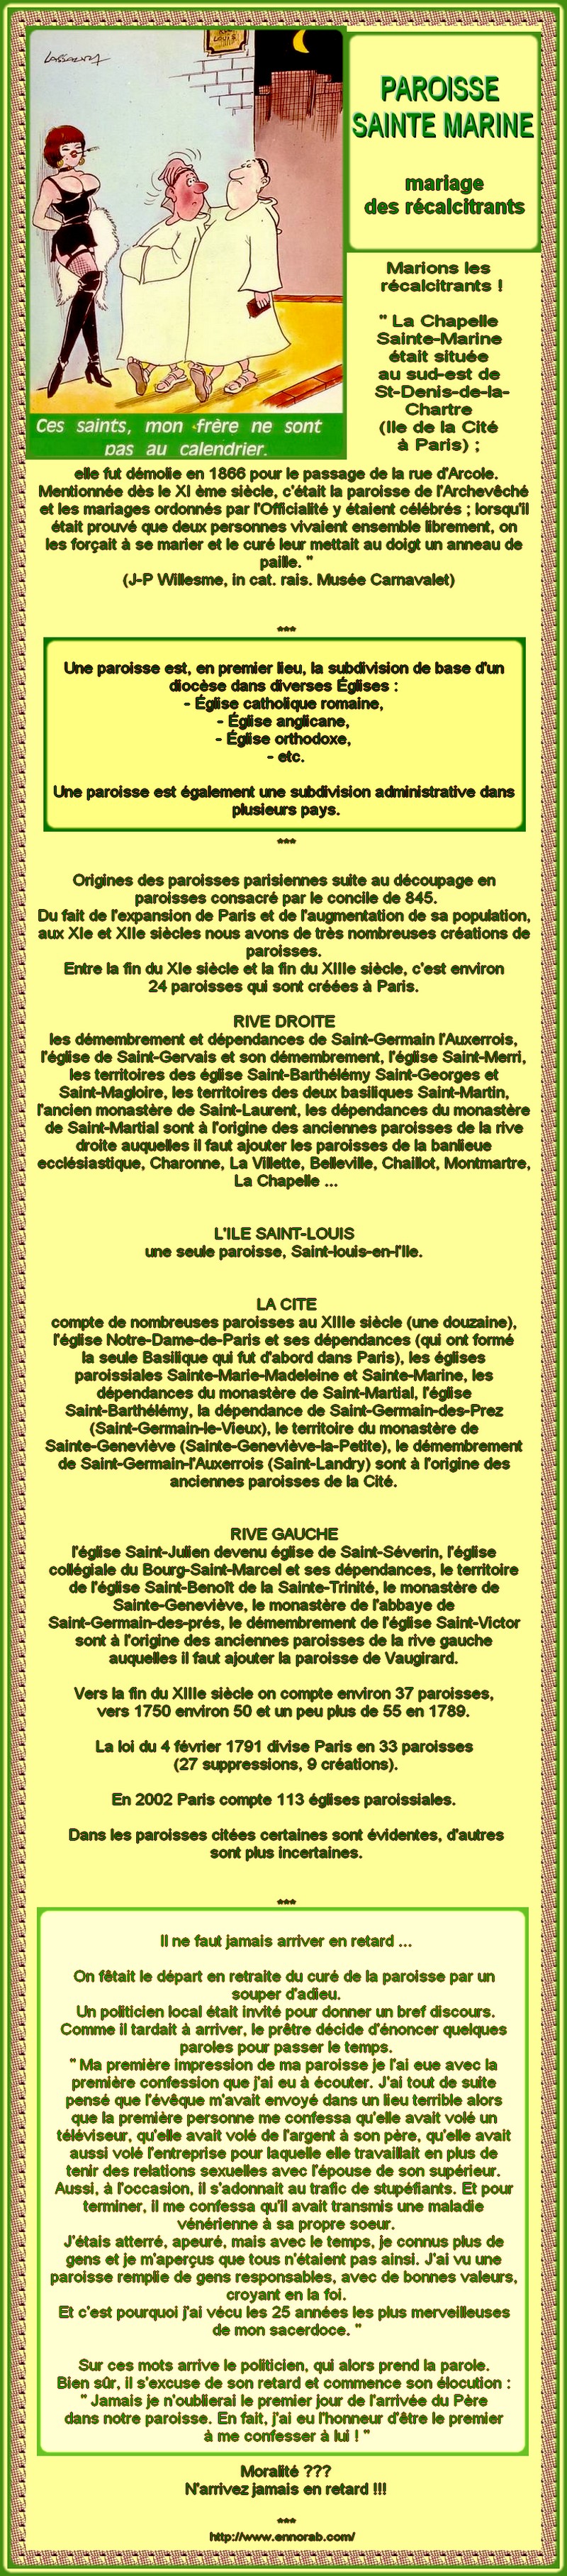 FRANCE - PARIS - CHAPELLE SAINTE MARINE - LIEU POUR LE MARIAGE DES RECALCITRANTS 1205181037051492919870009